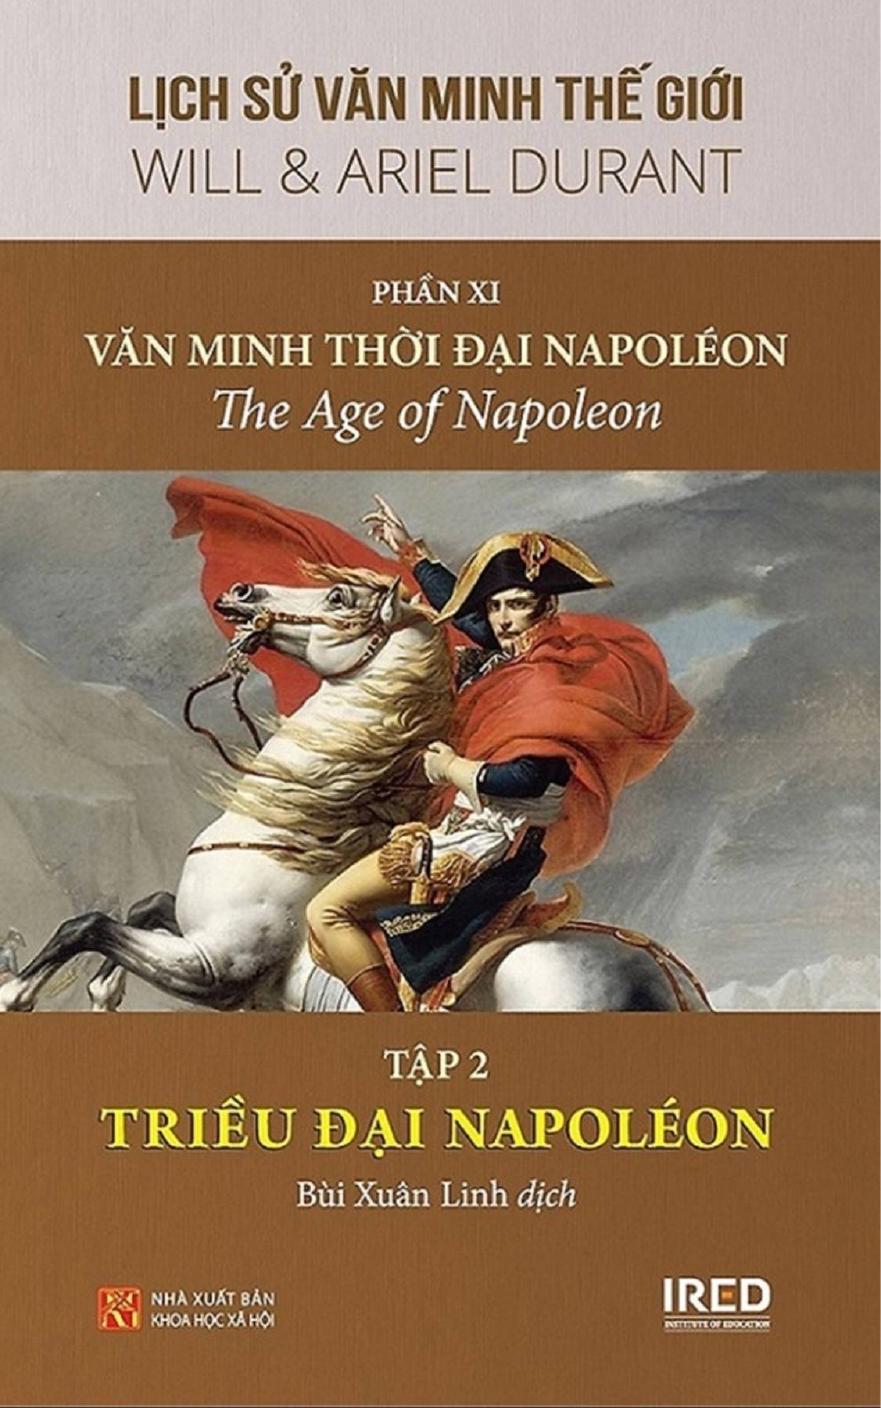 Lịch Sử Văn Minh Thế Giới Phần XI: Văn Minh Thời Đại Napoléon (tập 2)